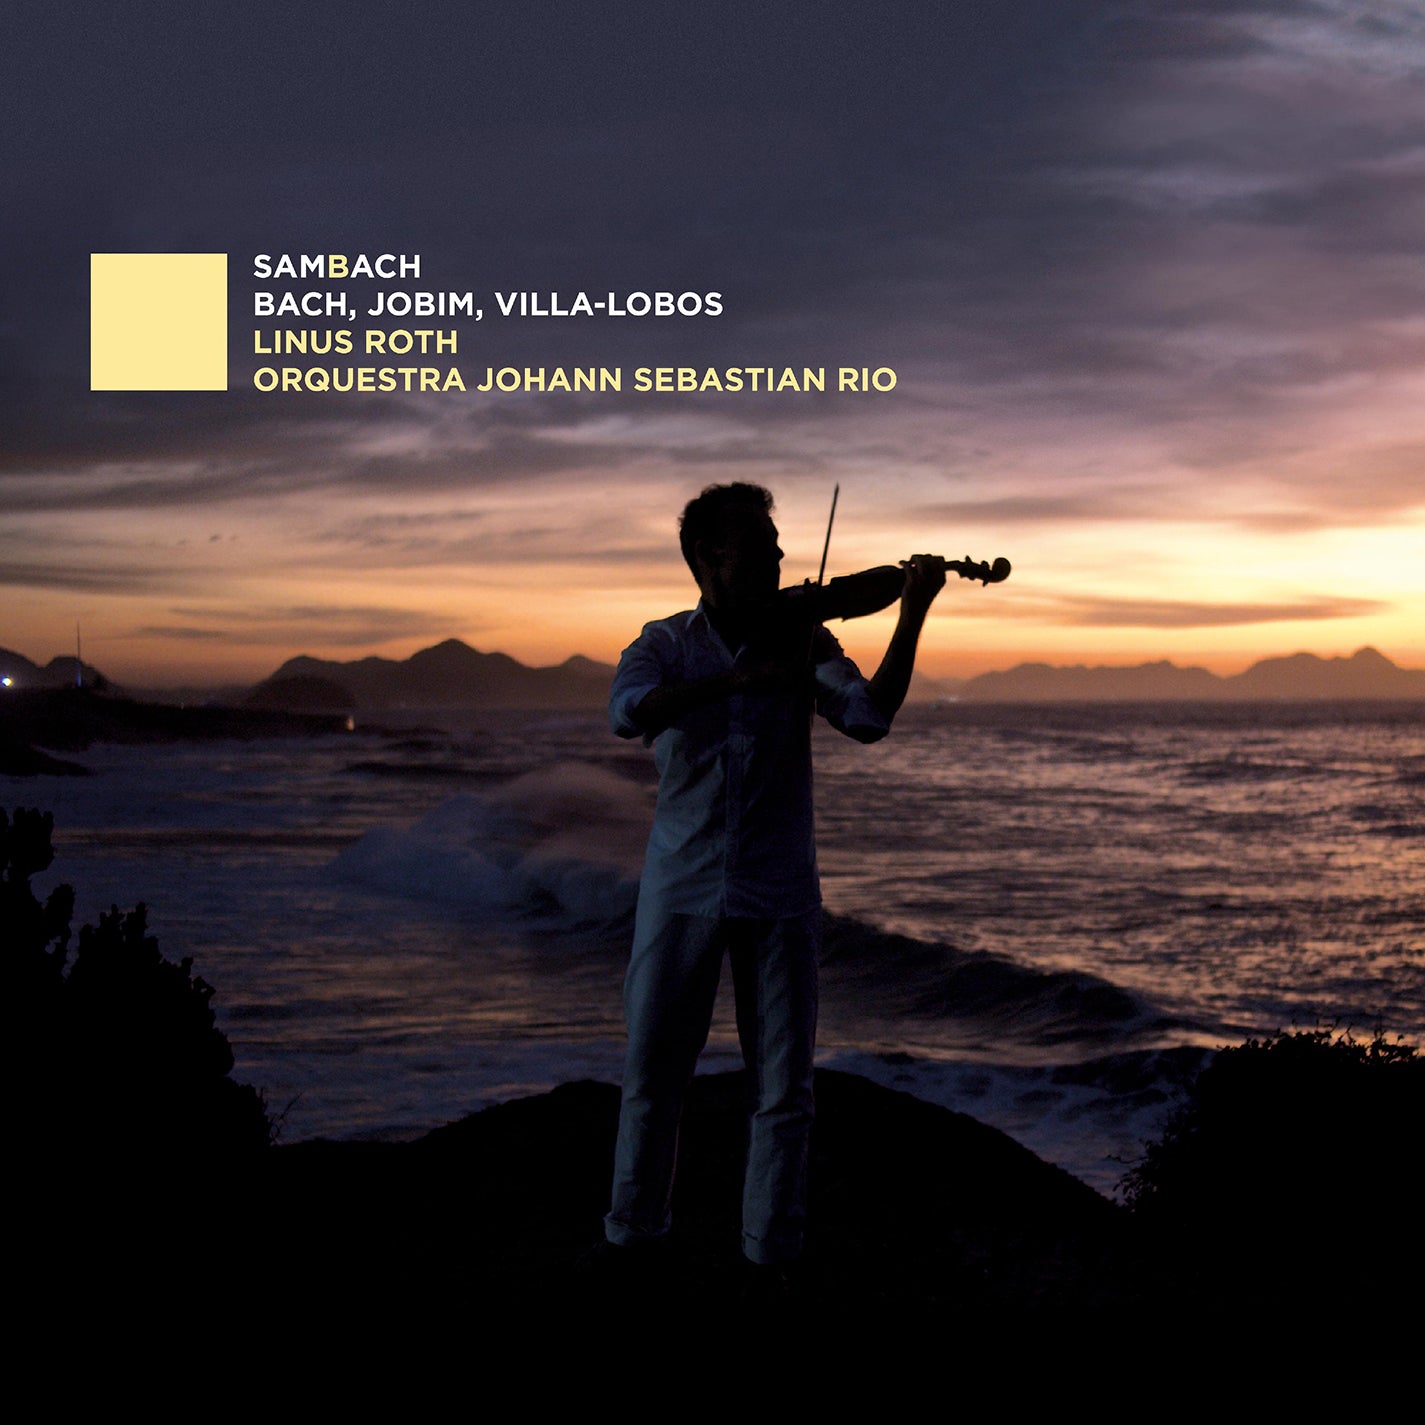 Bach, Jobim & Villa-Lobos: SamBach / Linus Roth